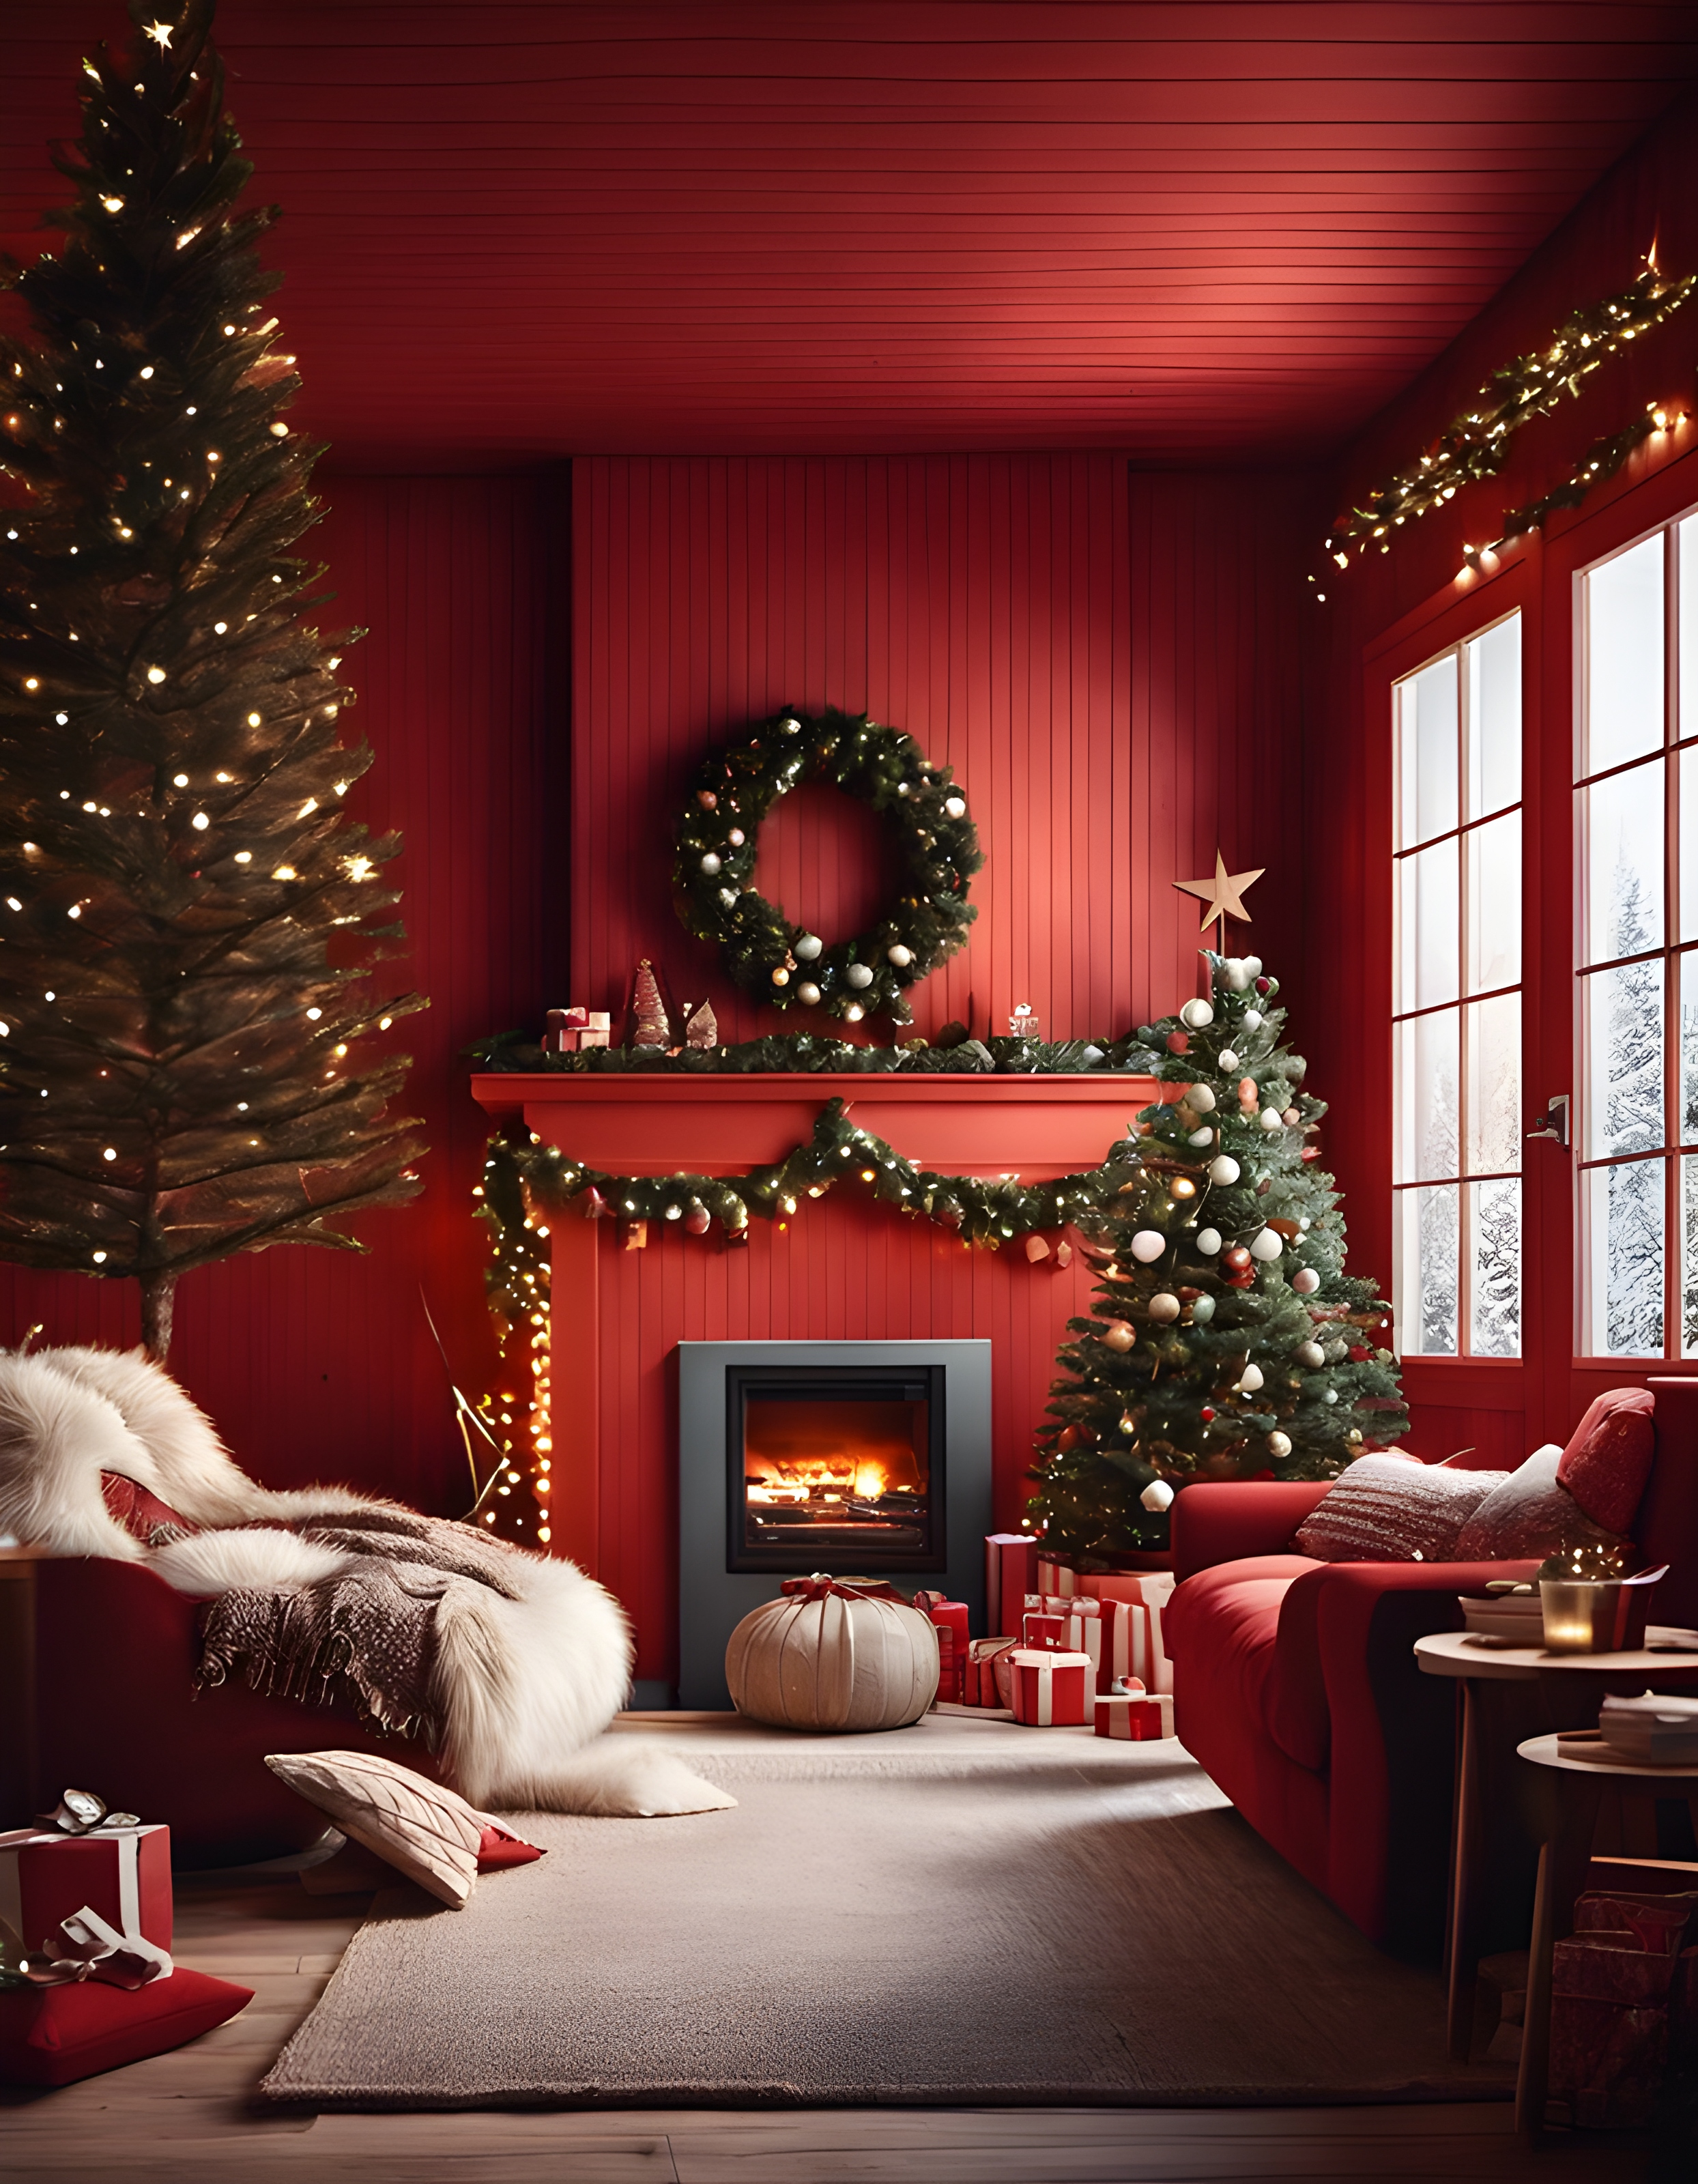 ภาพถ่ายภายในบ้านไม้สวีเดนสีแดง ฮุกกะ เวลาคริสต์มาส บรรยากาศสบาย ๆ แสงไฟประดับ การตกแต่งภายในที่ทันสมัย